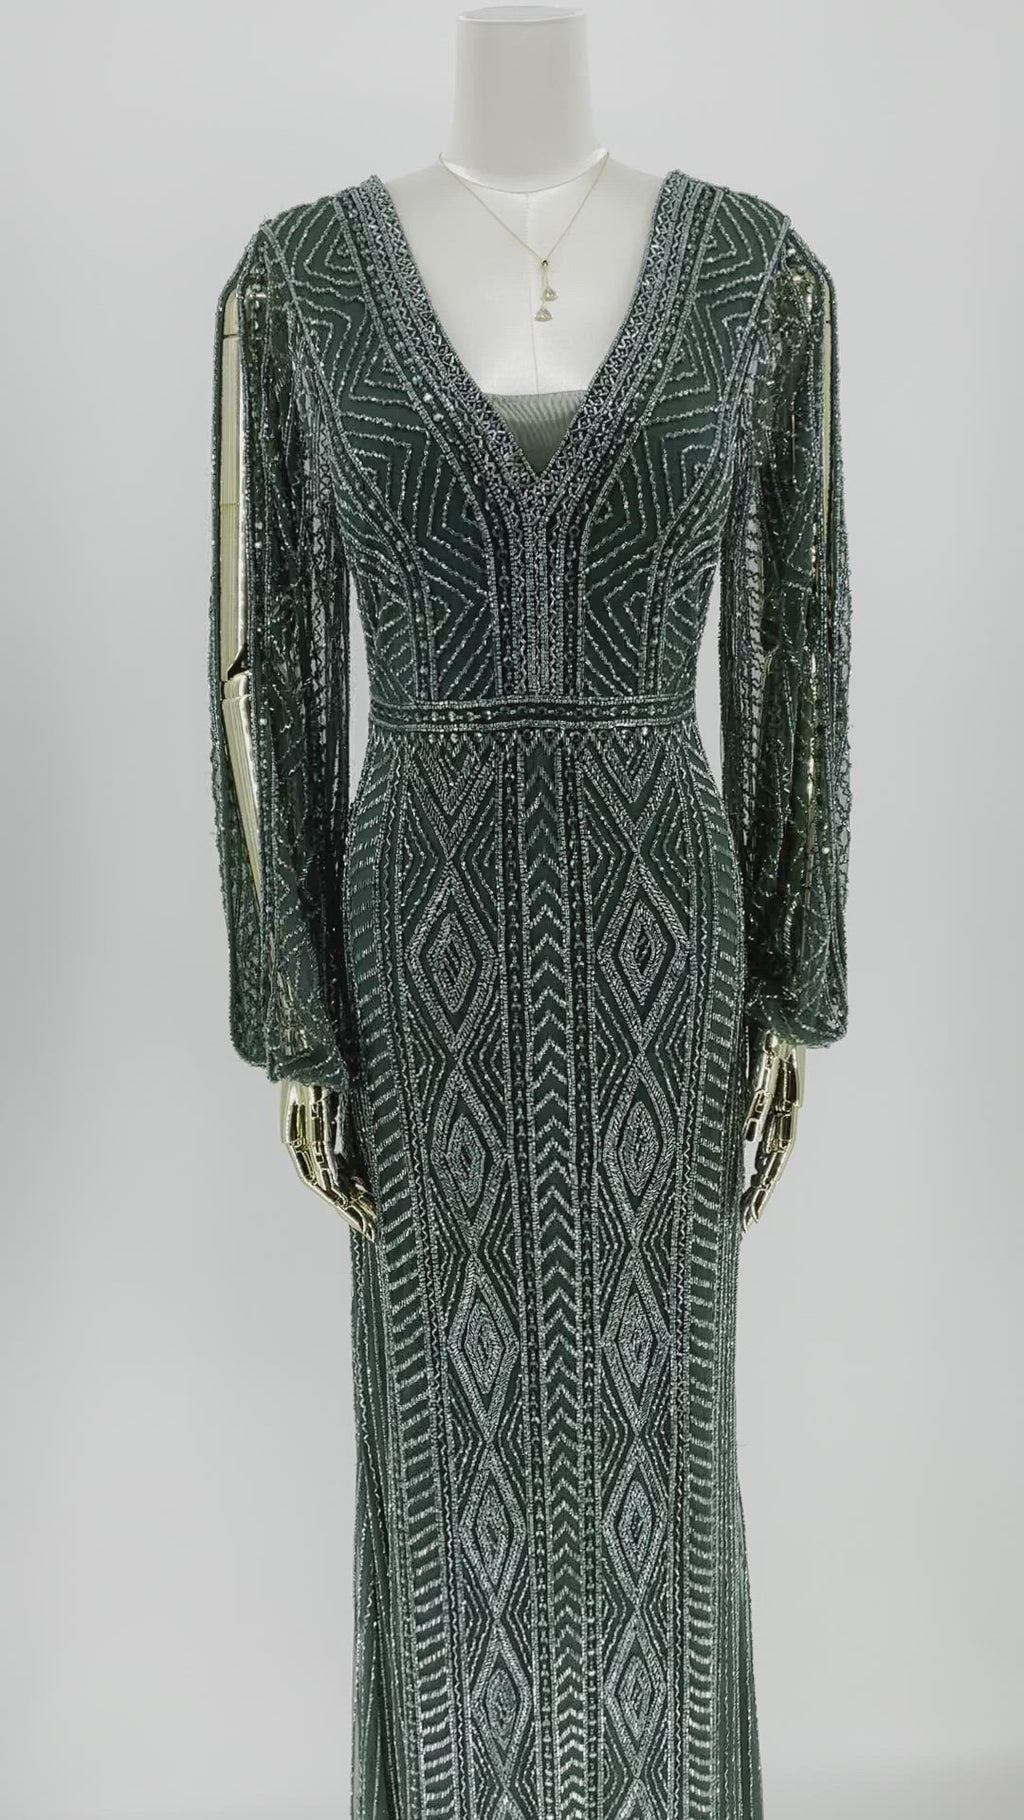 Detaljevisning af Smaragdvævning Gallakjole, fokus på det fine håndarbejde og de luksuriøse smaragdfarvede detaljer, der definerer kjolens eksklusivitet.